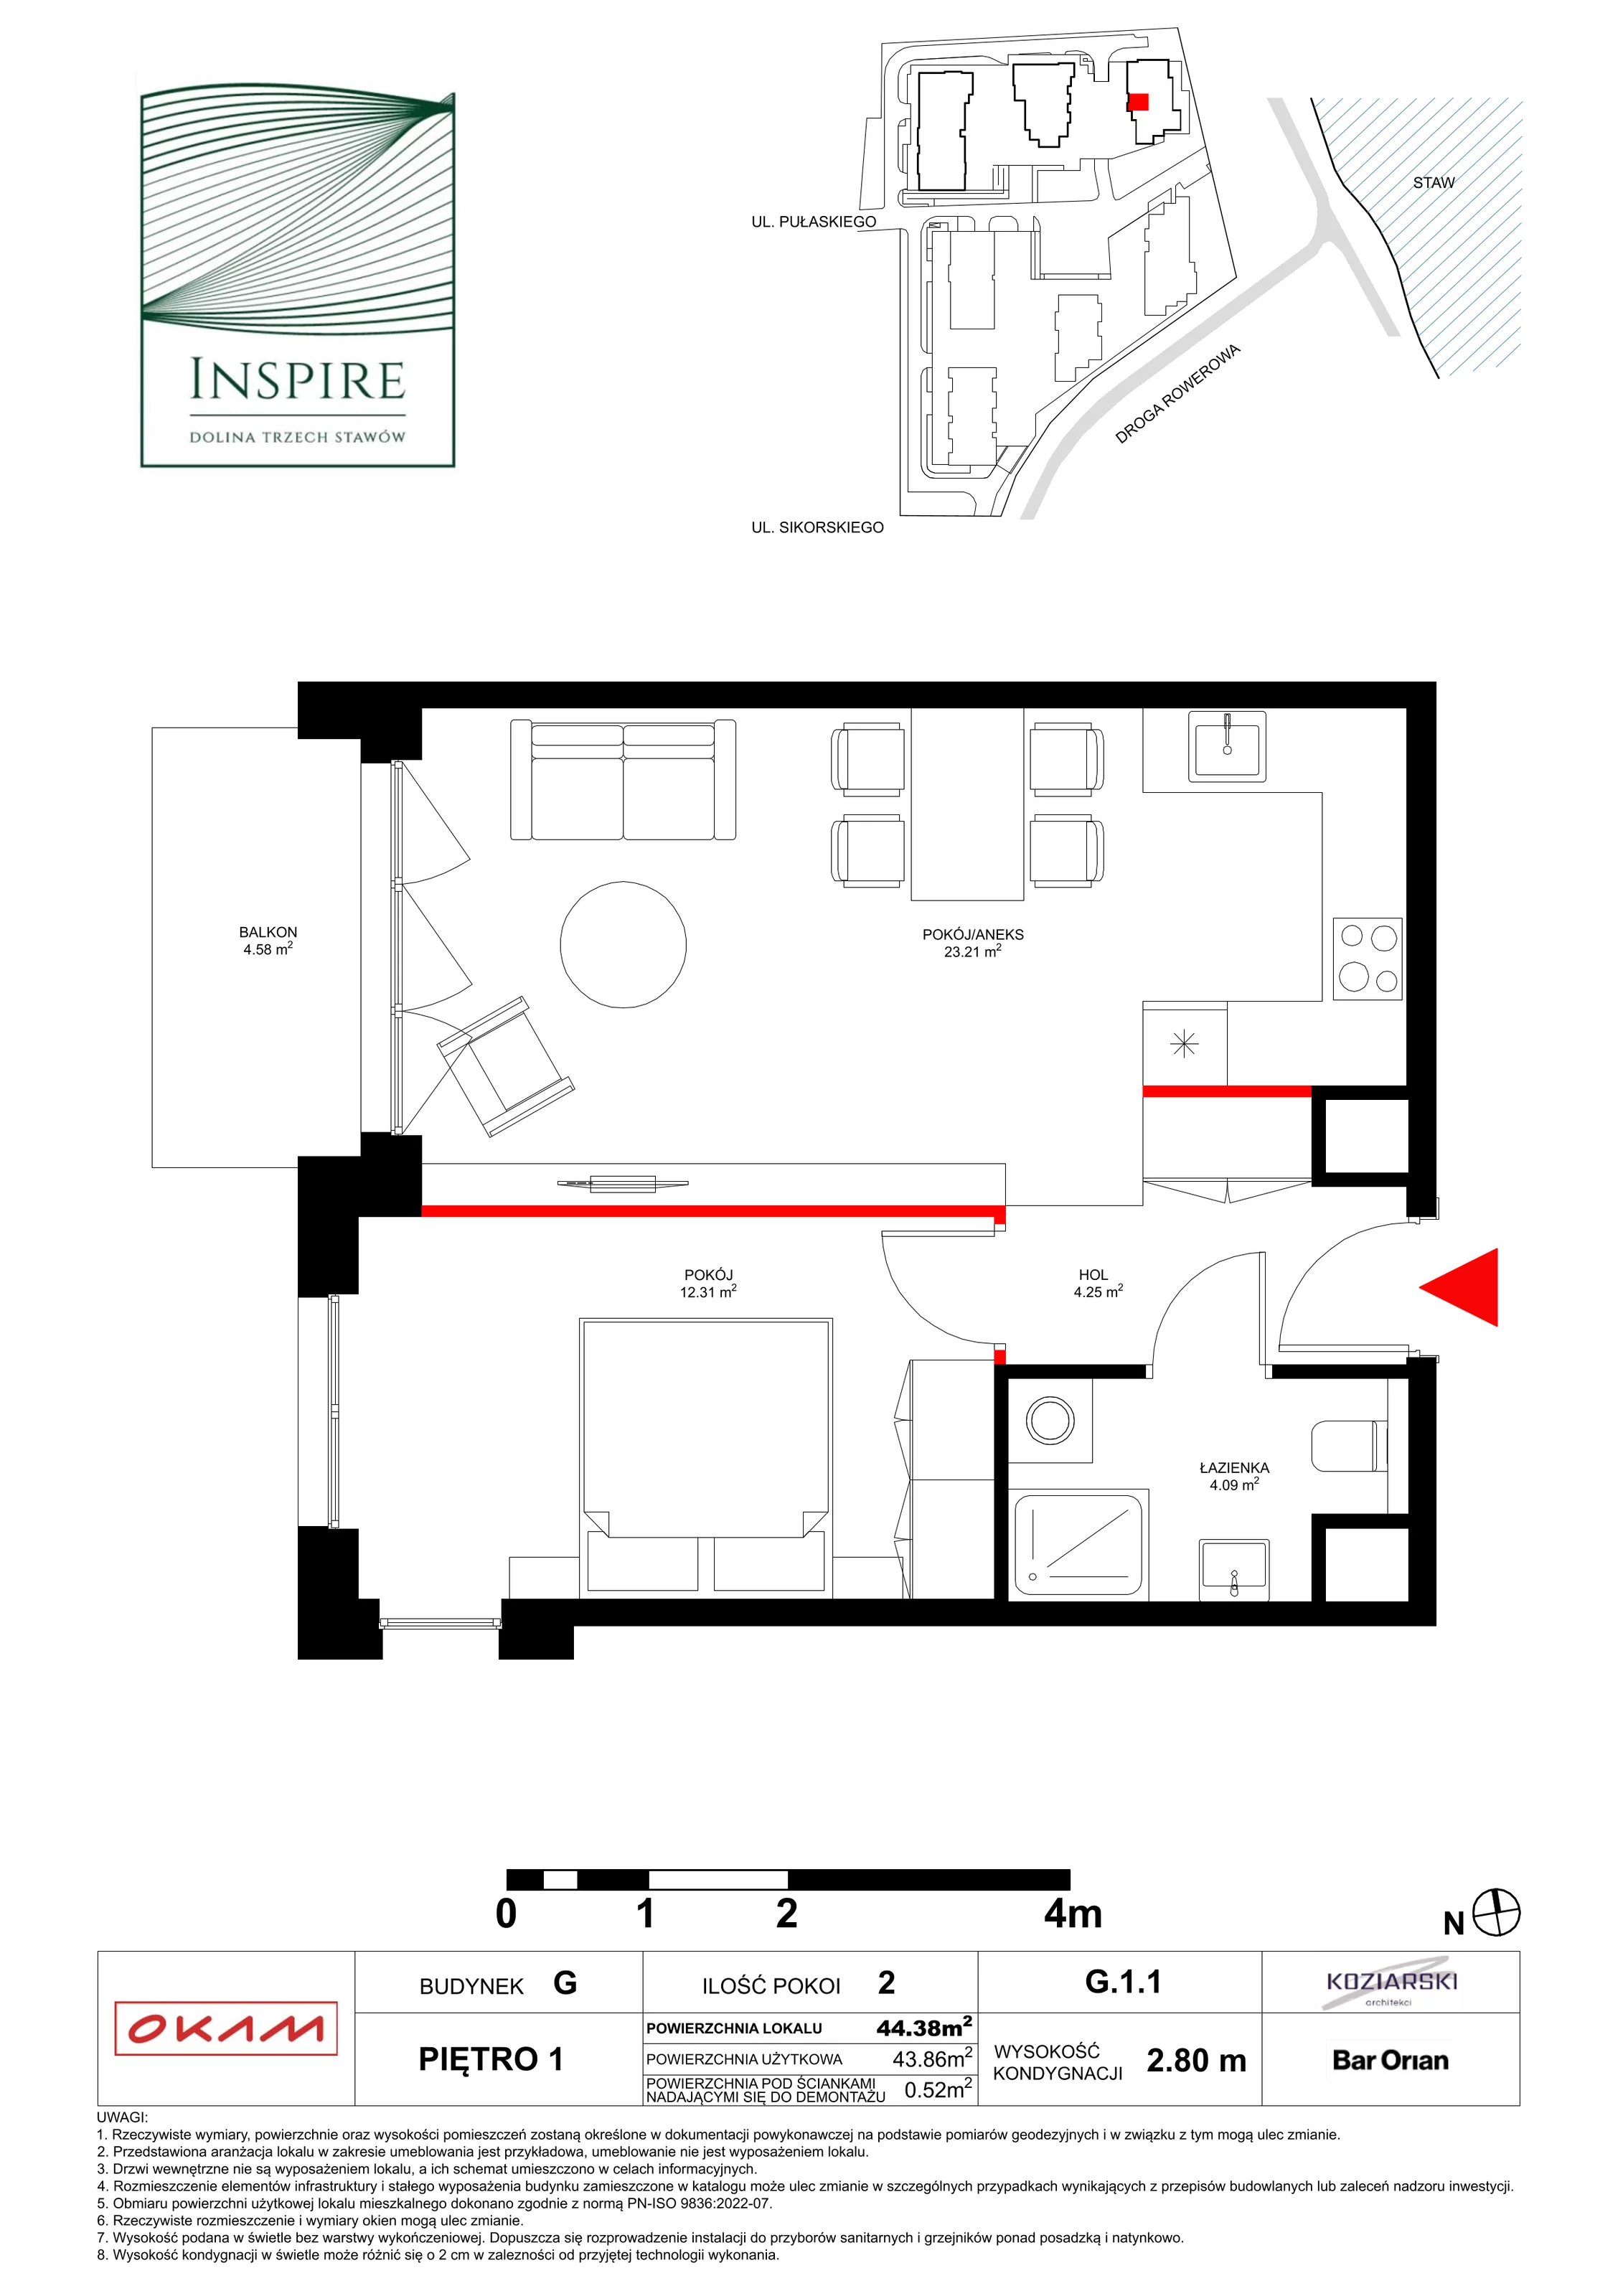 Apartament 43,82 m², piętro 1, oferta nr G.1.1, Inspire, Katowice, Osiedle Paderewskiego-Muchowiec, Dolina Trzech Stawów, ul. gen. Sikorskiego 41